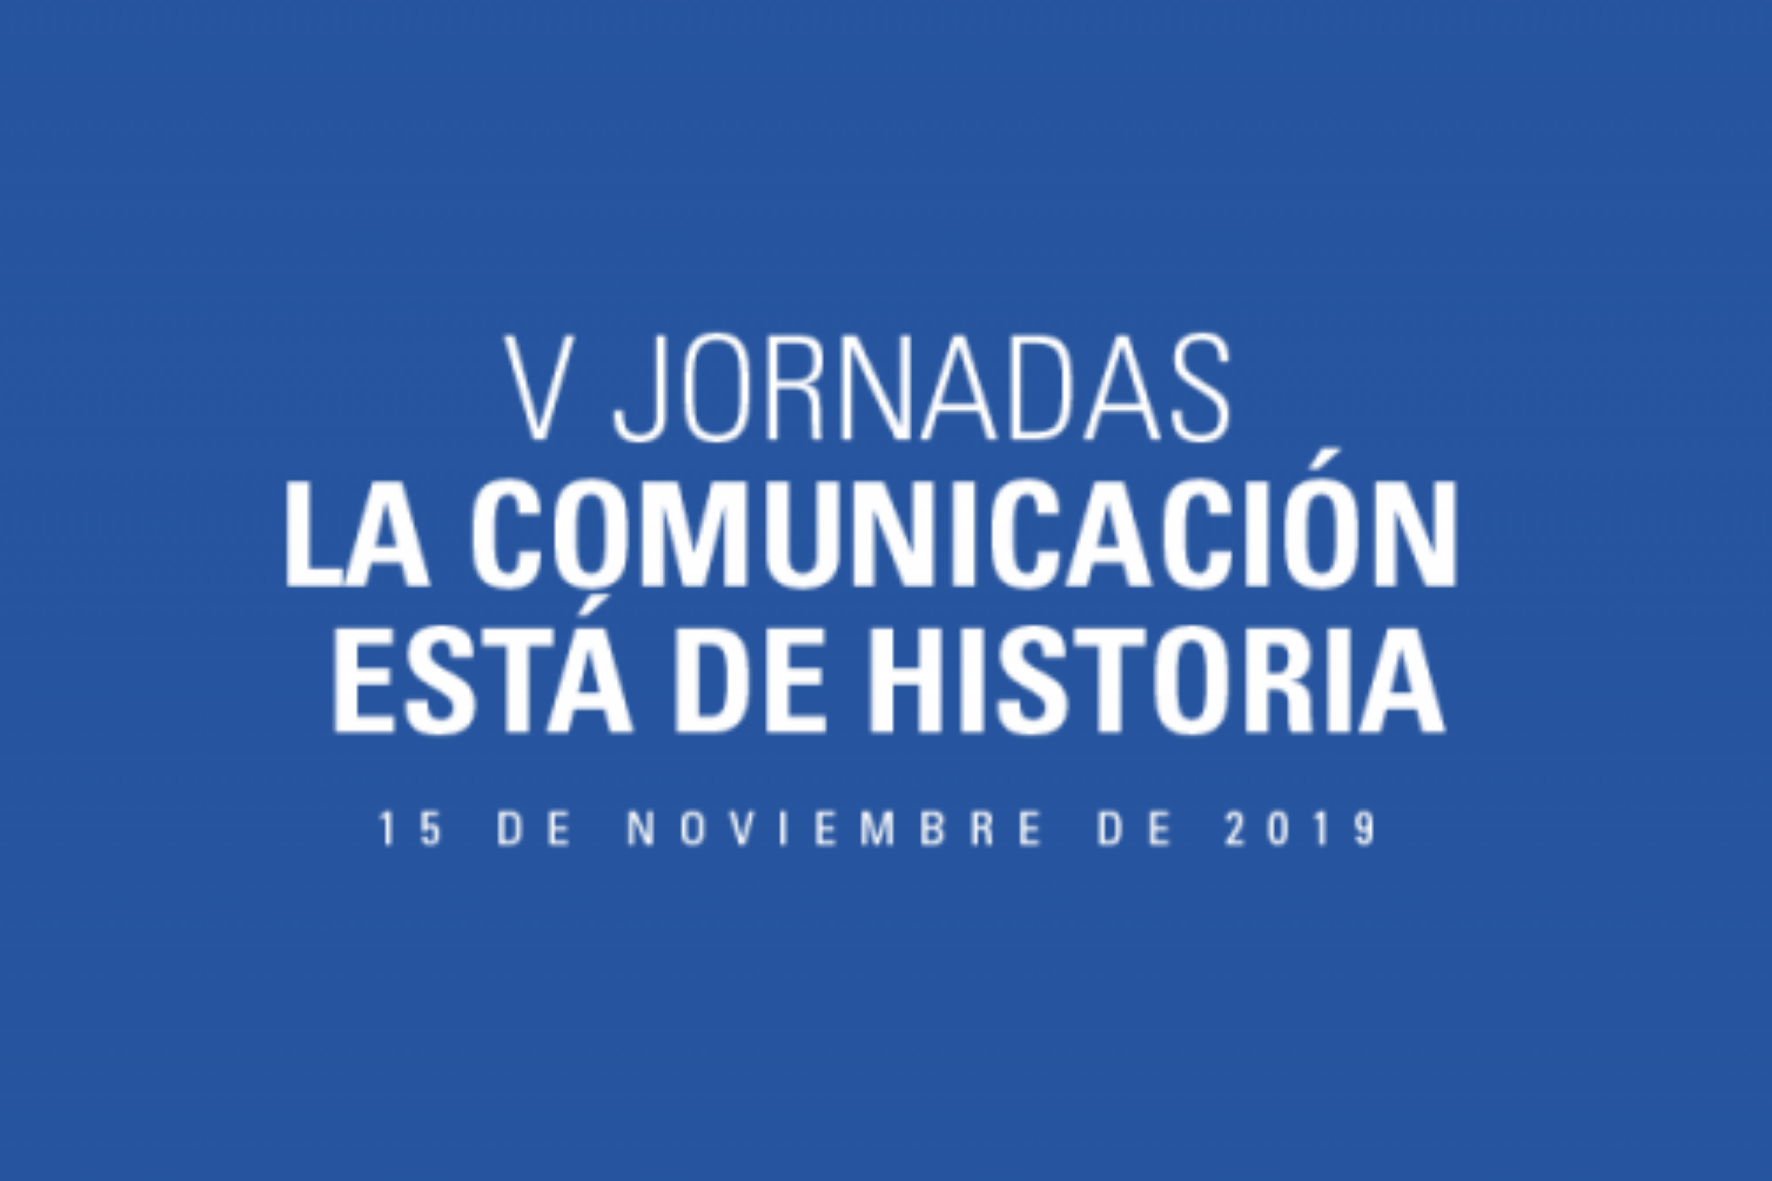 organizadas por el Centro de Estudios en Historia/Comunicación/Periodismo/Medios (CEHICOPEME)